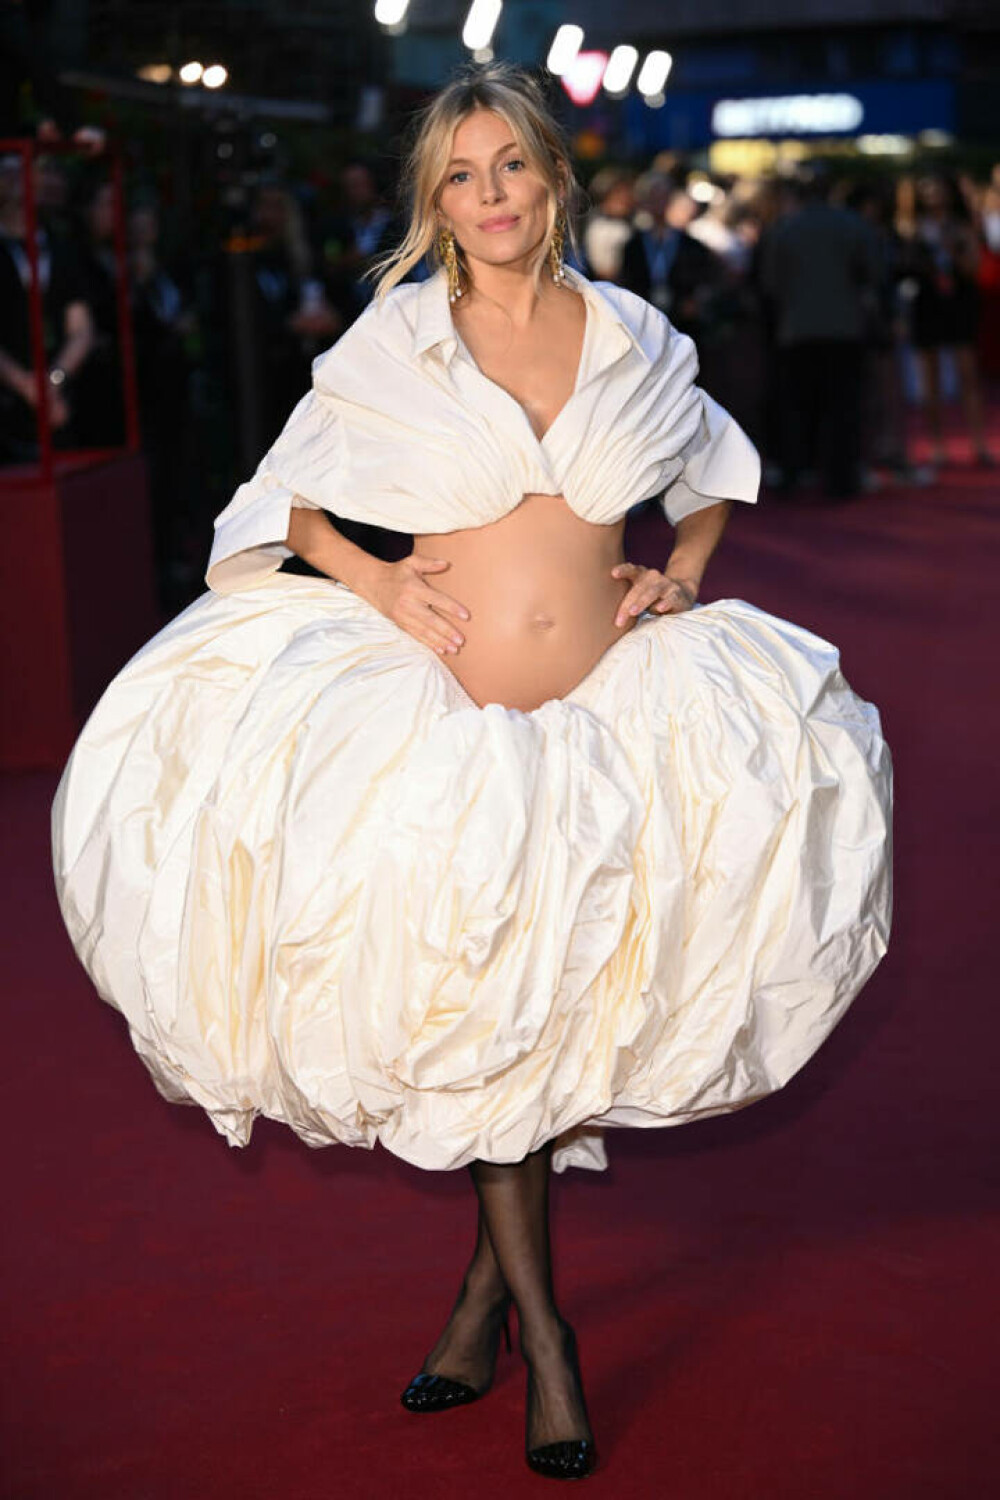 Apariții șoc la Săptămâna Modei de la Londra. Graviduța care și-a arătat burtica într-o rochie albă îndrăzneață | FOTO - Imaginea 3